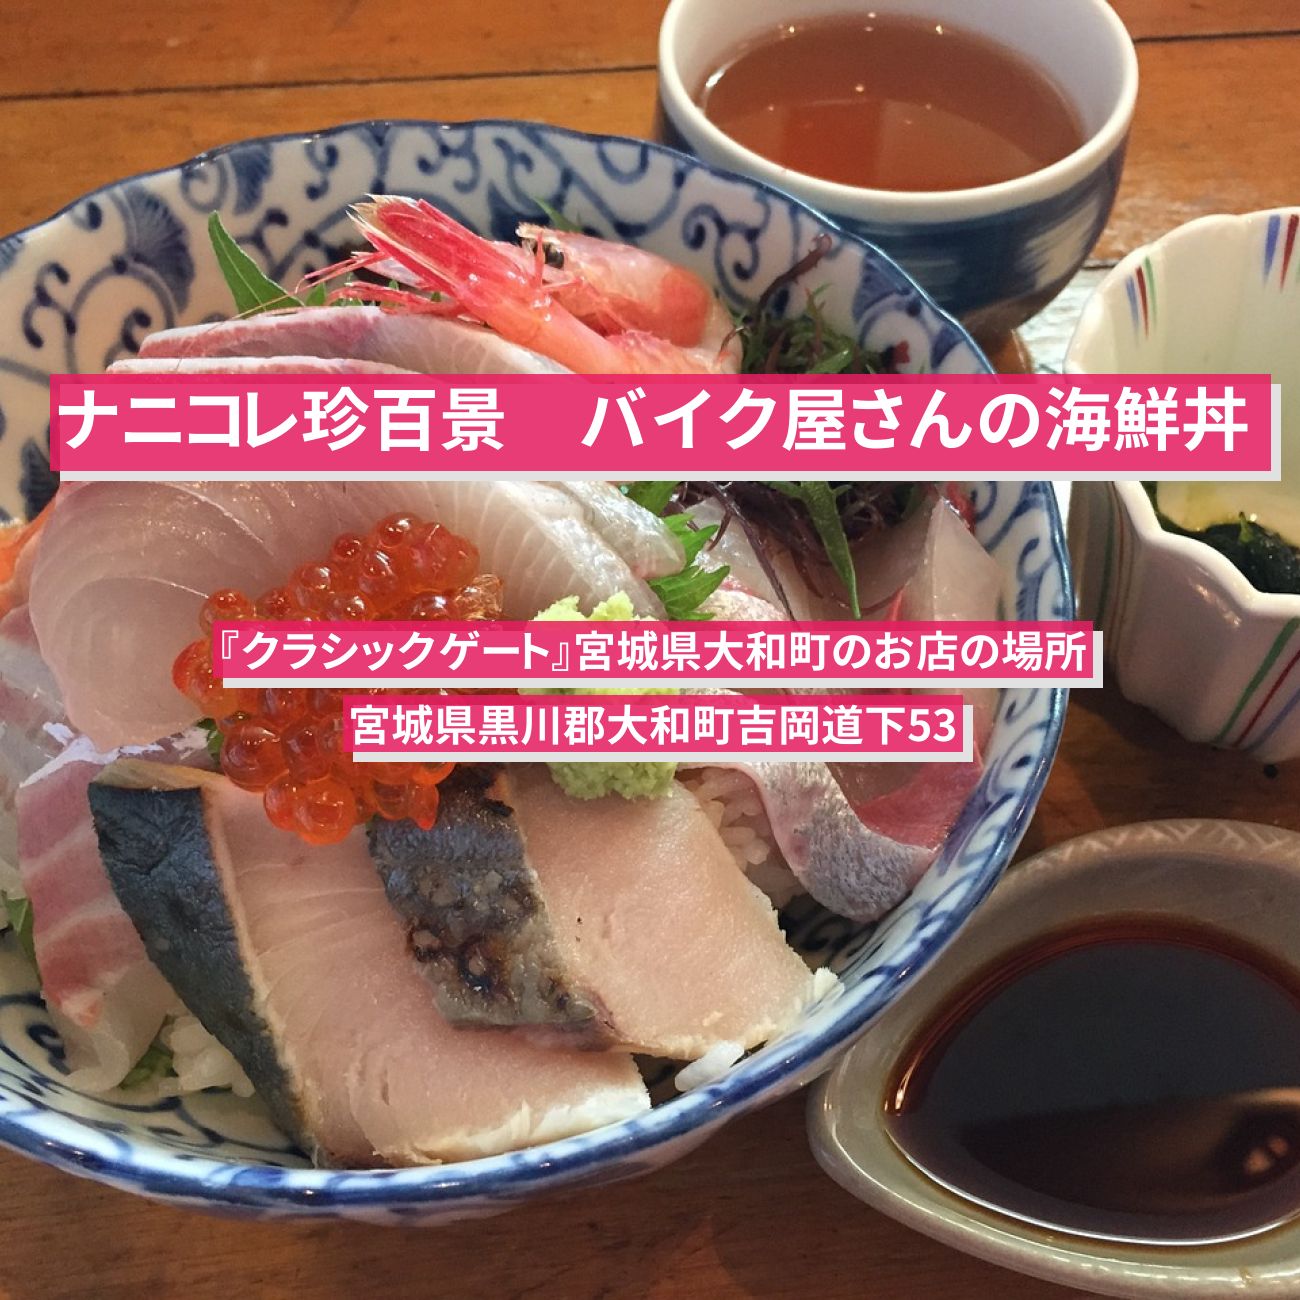 【ナニコレ珍百景】海鮮丼(バイク屋さん)『クラシックゲート』宮城県大和町のお店の場所